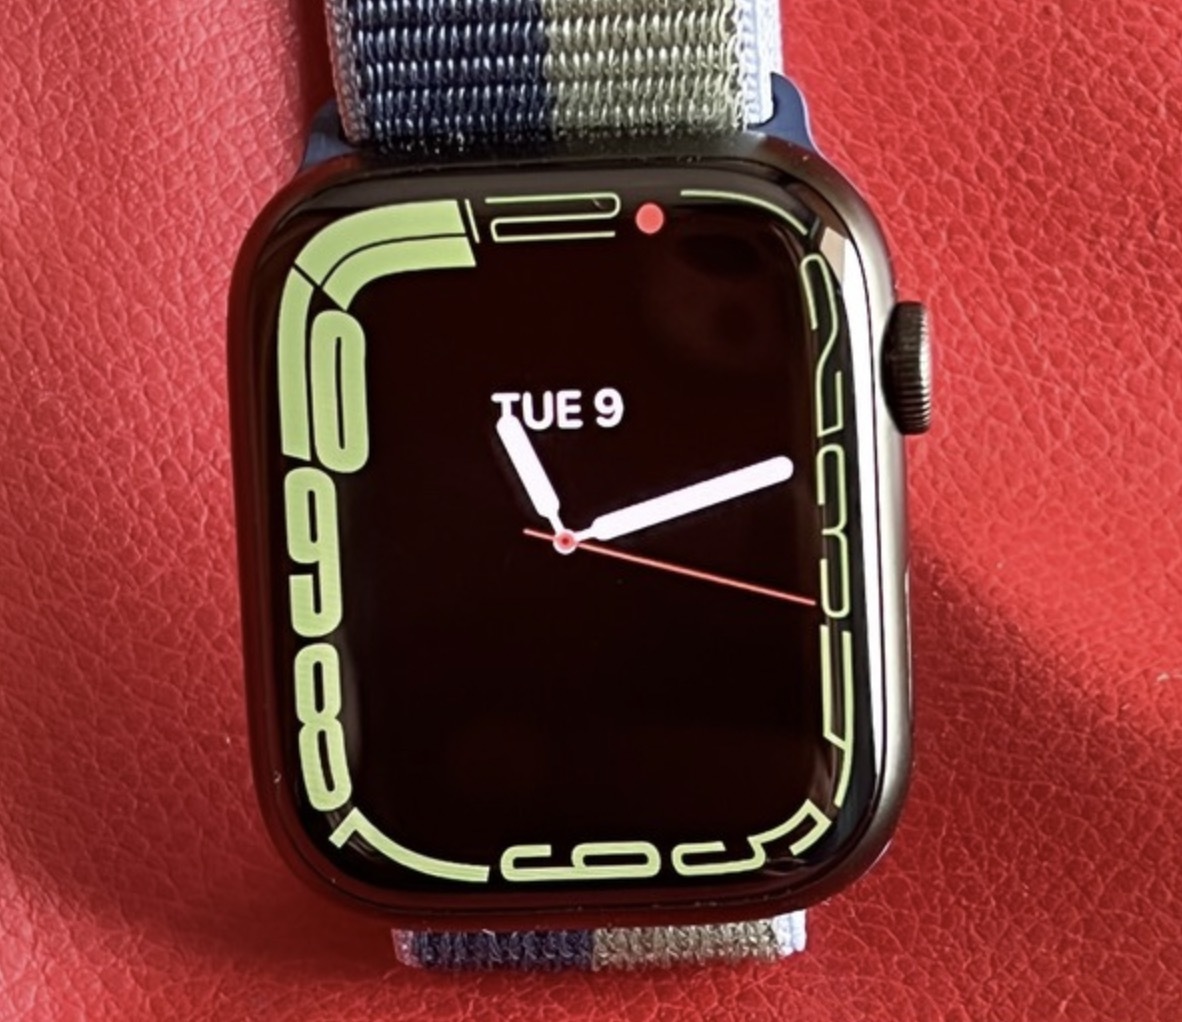   Apple Watch   ,    